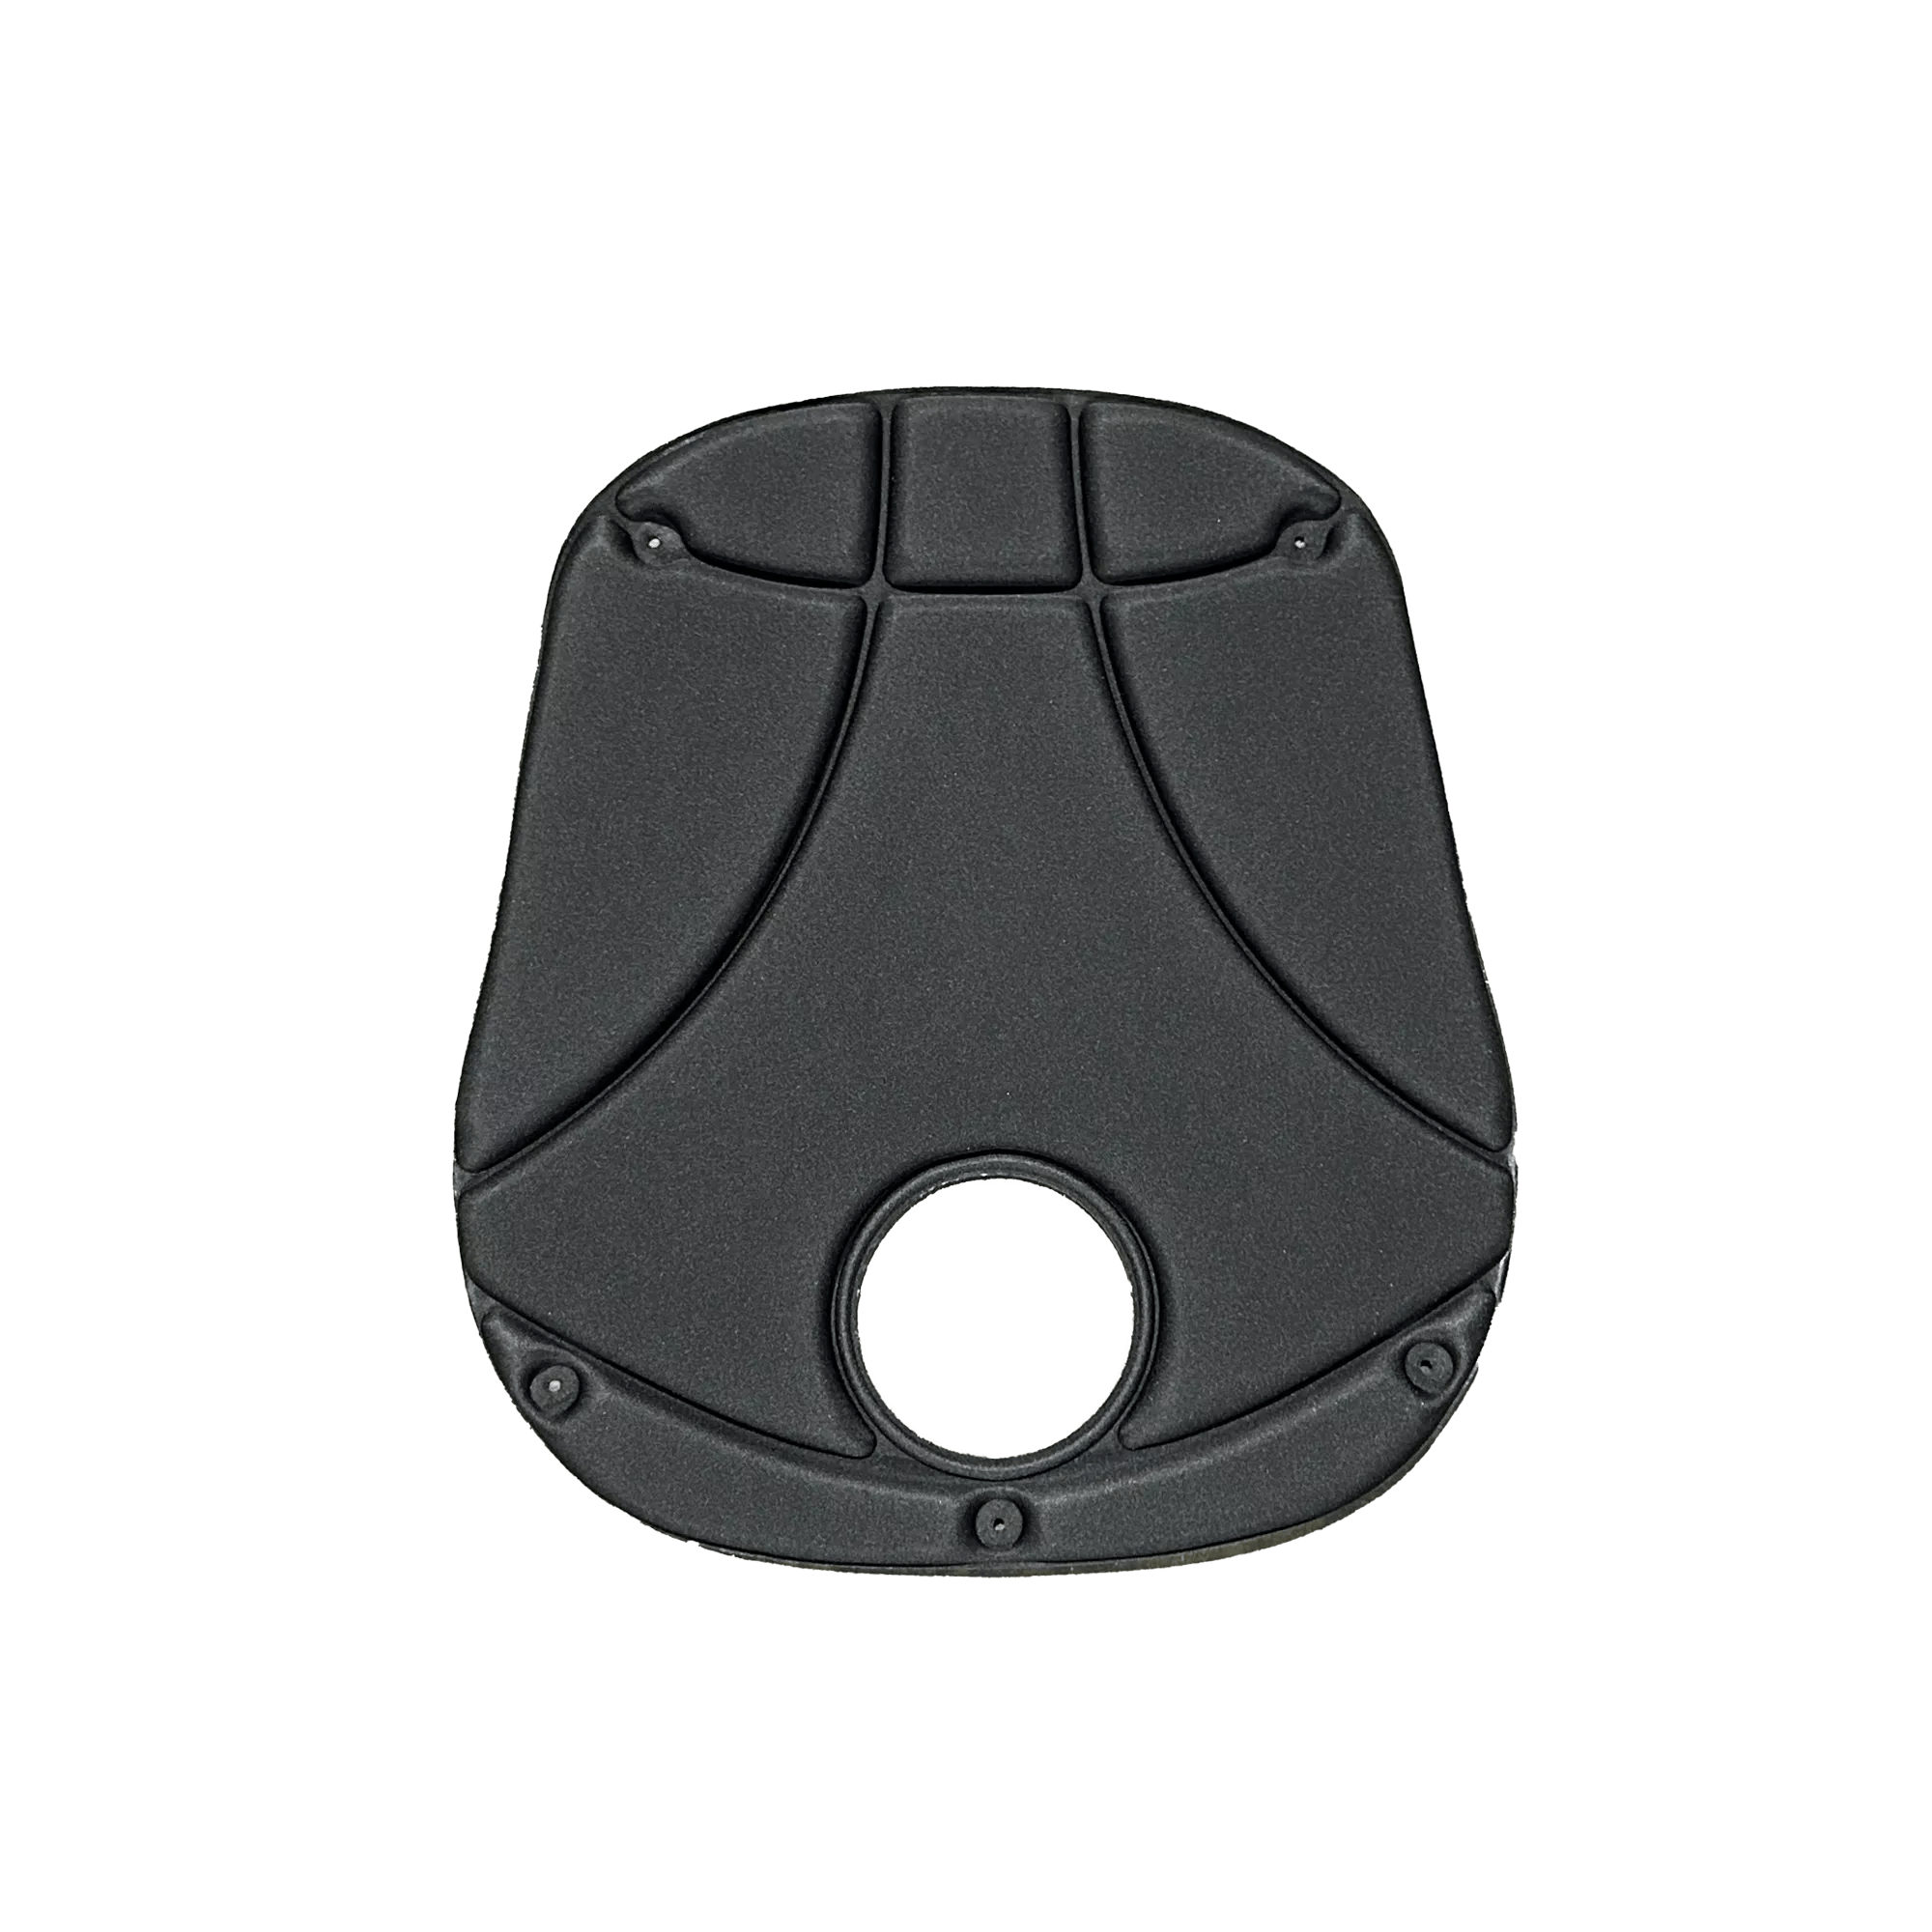 PERCEPTION - Coussin de siège CSS avec porte-gobelet intégré - Noir -  - 9800562 - 